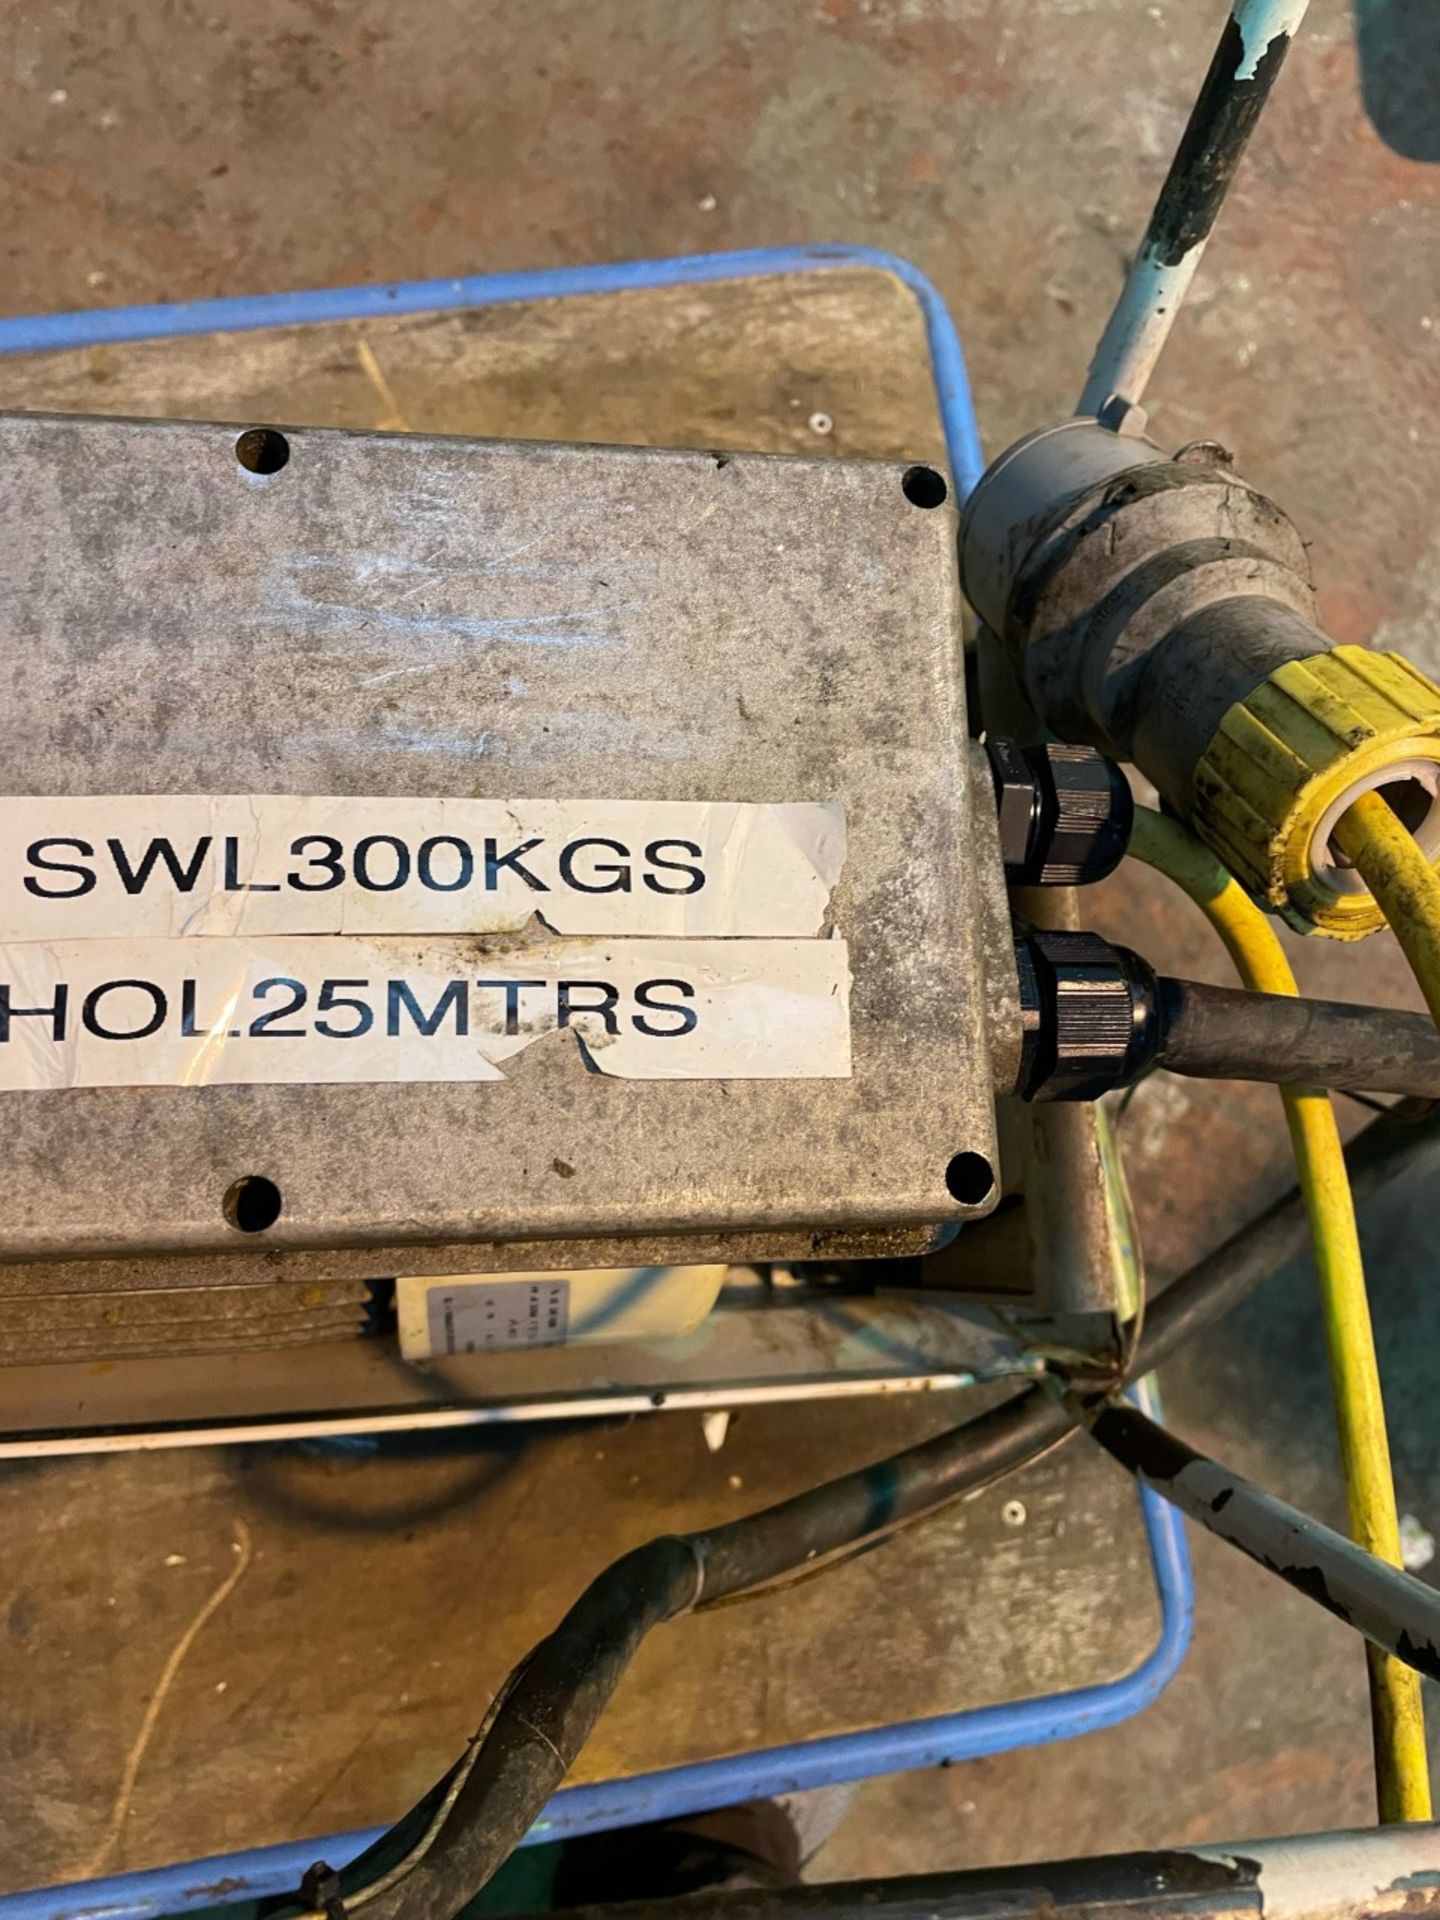 Beta workshop hoist winch 110v 300kg SWL - Image 2 of 2